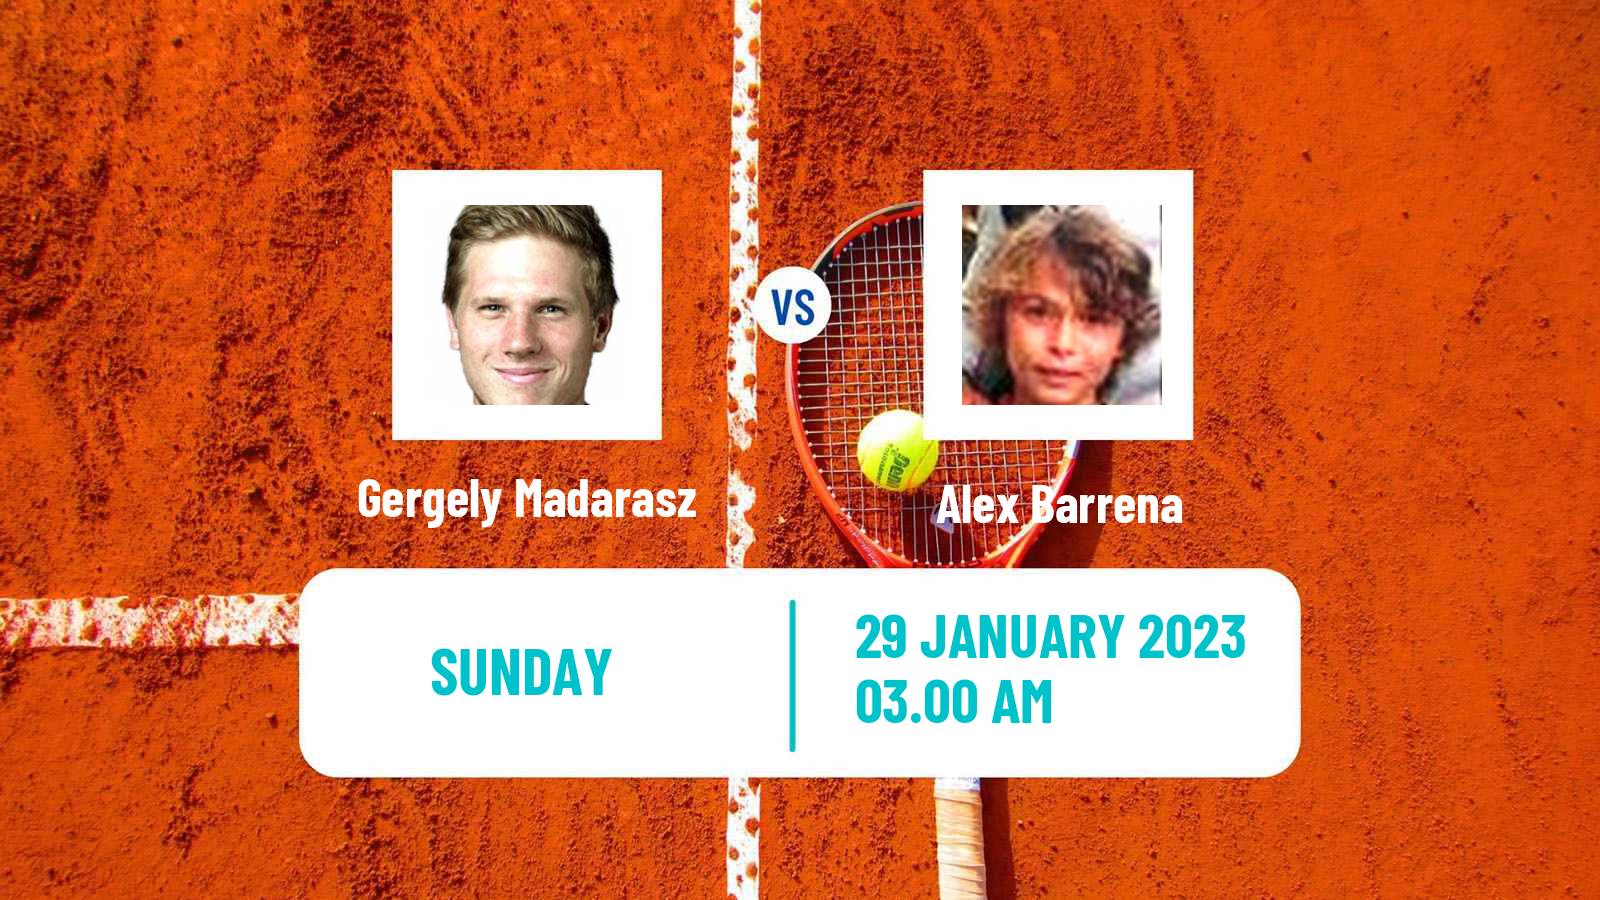 Tennis ITF Tournaments Gergely Madarasz - Alex Barrena